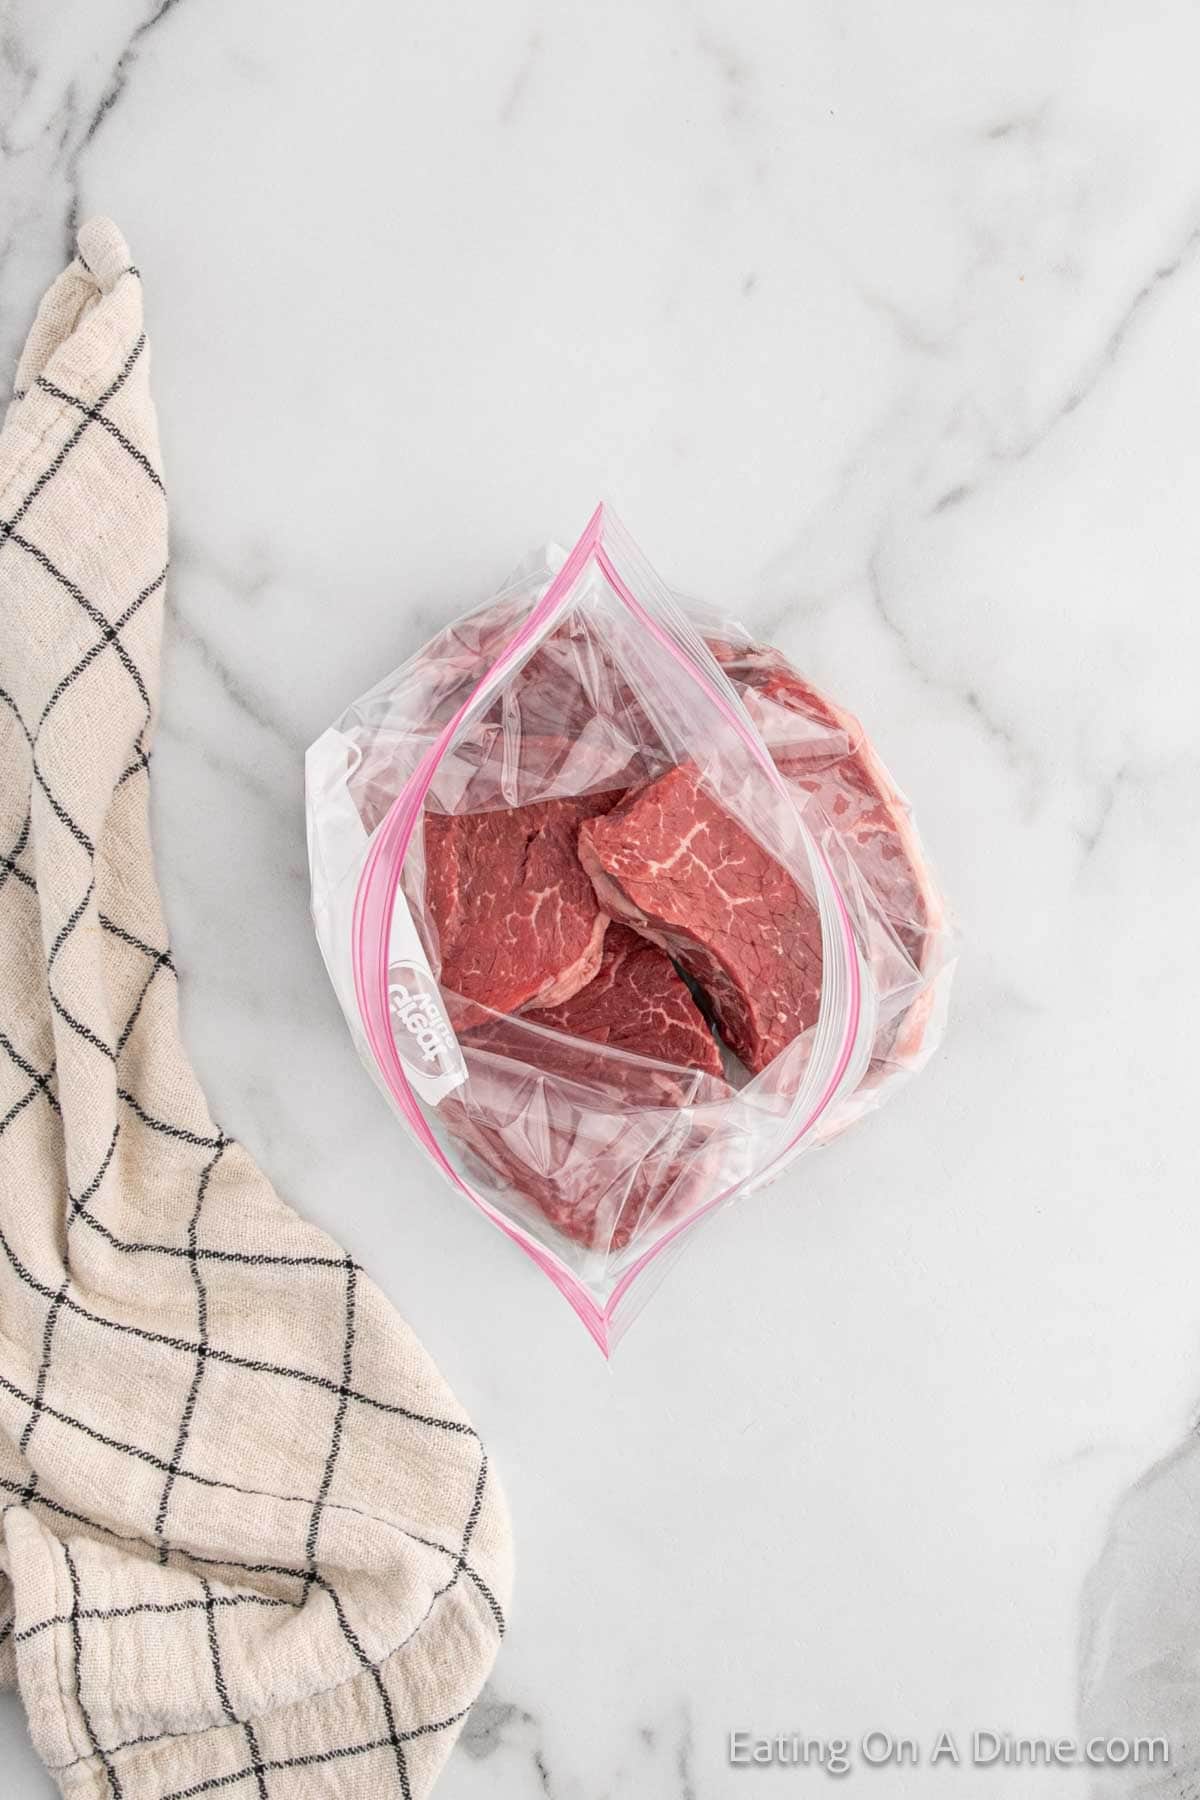 Steaks in a zip lock bag